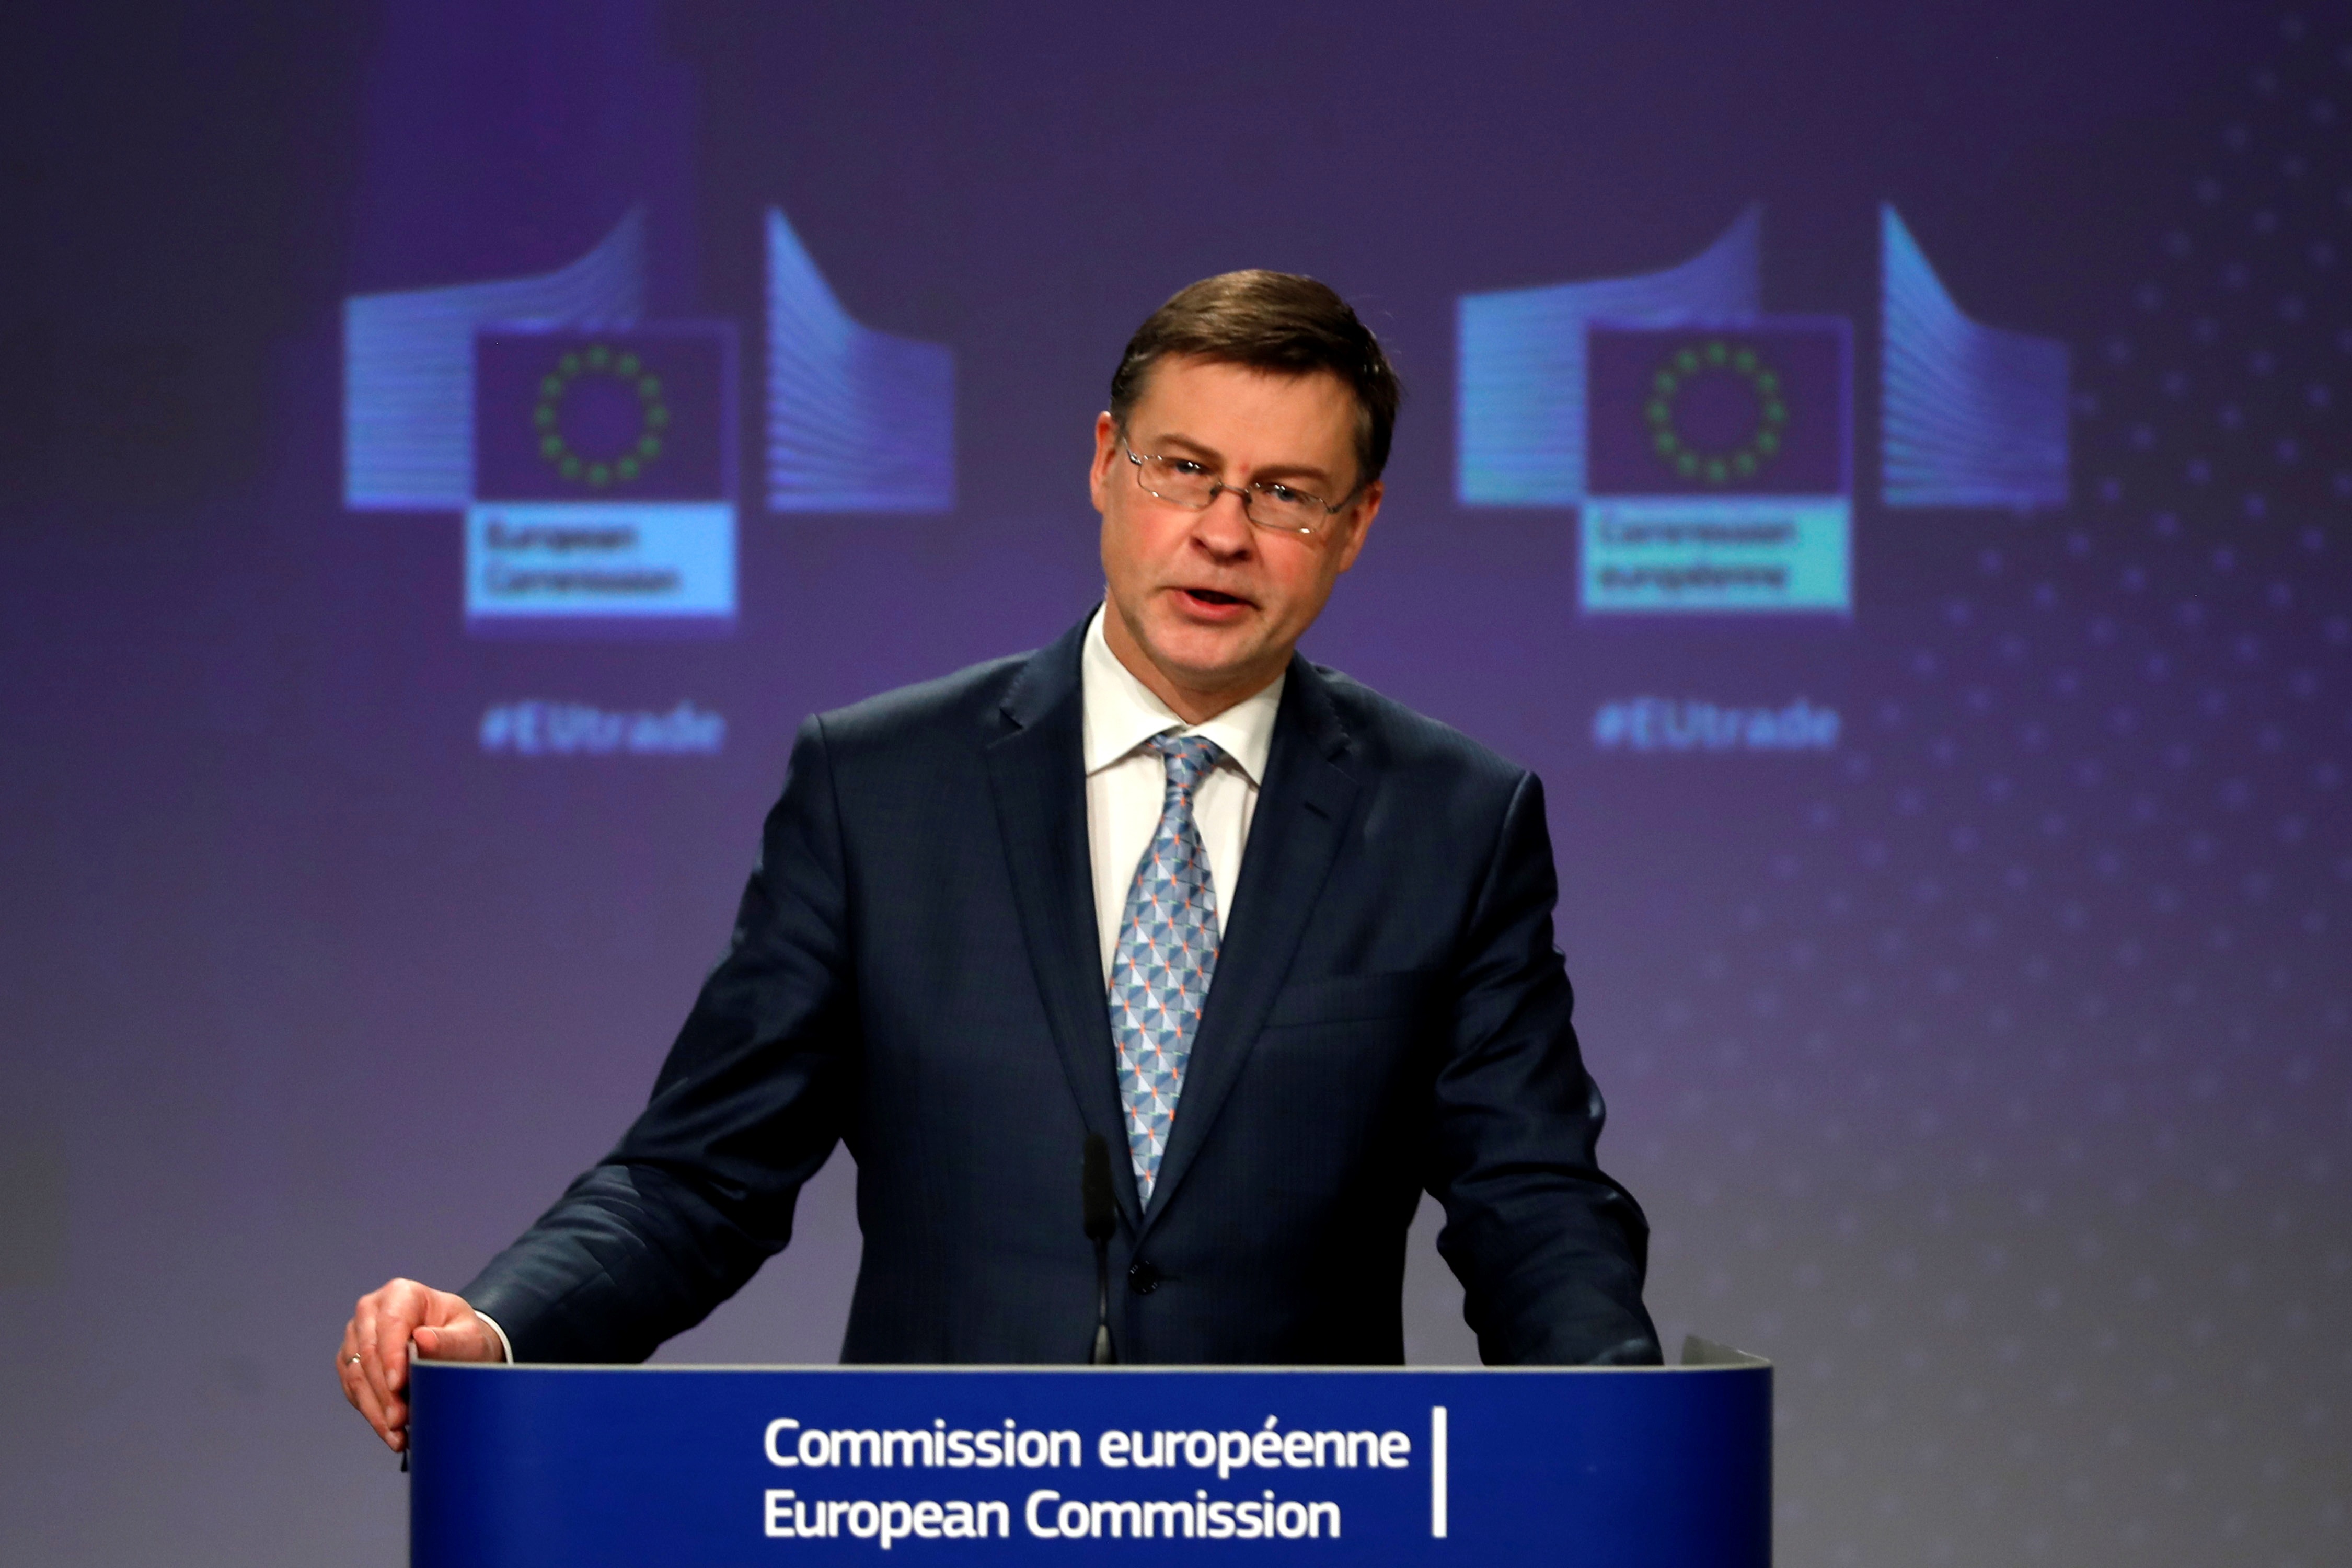 El vicepresidente de la Comisión Europea (CE) y responsable de Comercio, Valdis Dombrovskis, afirmó que la Unión Europea (UE) sigue comprometida en trabajar para ratificar el acuerdo comercial (EFE/EPA/Francisco Seco)
